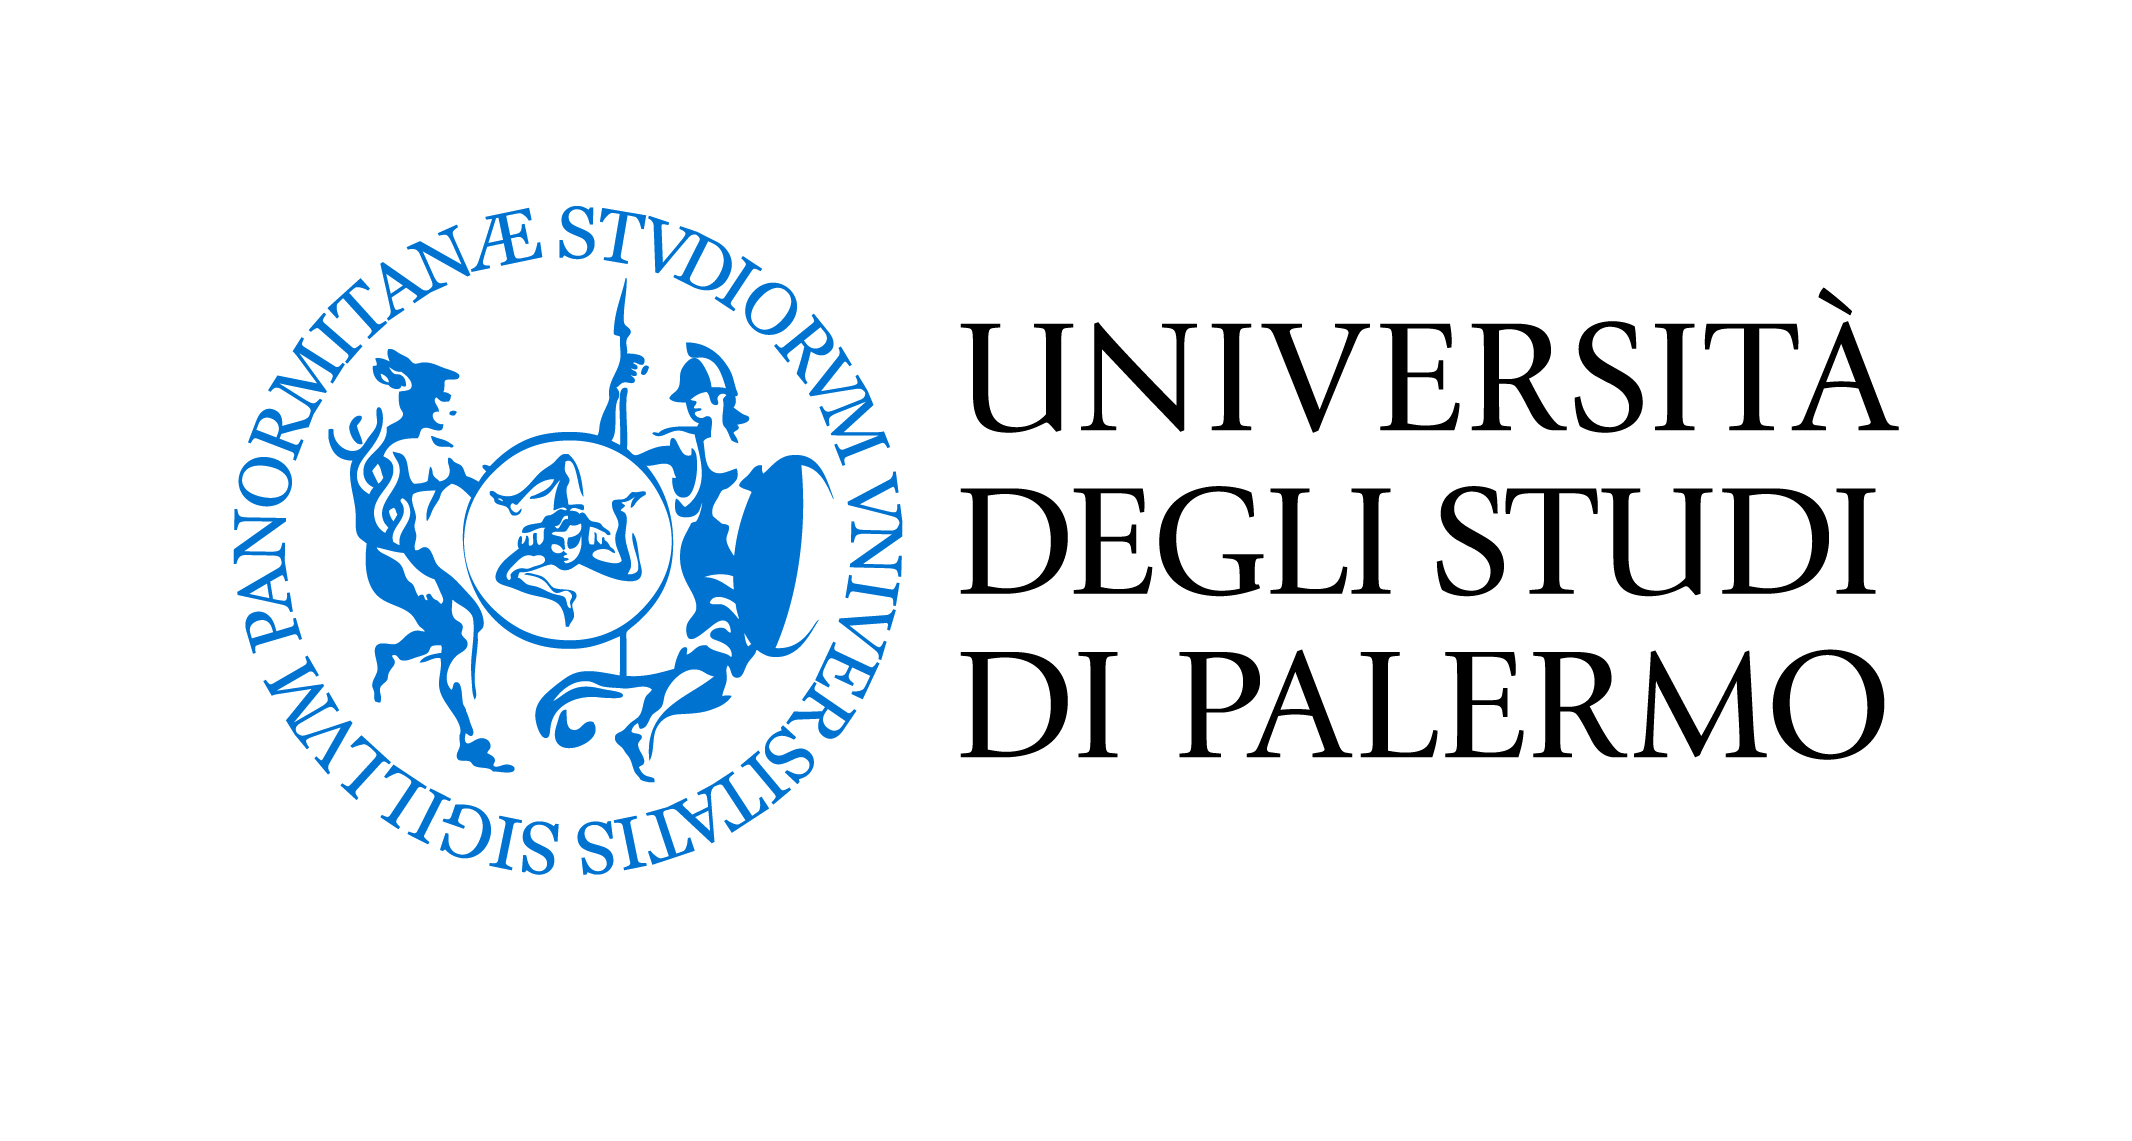 Università di Palermo: Risultati Borse di Studio - Cefaluweb.com News